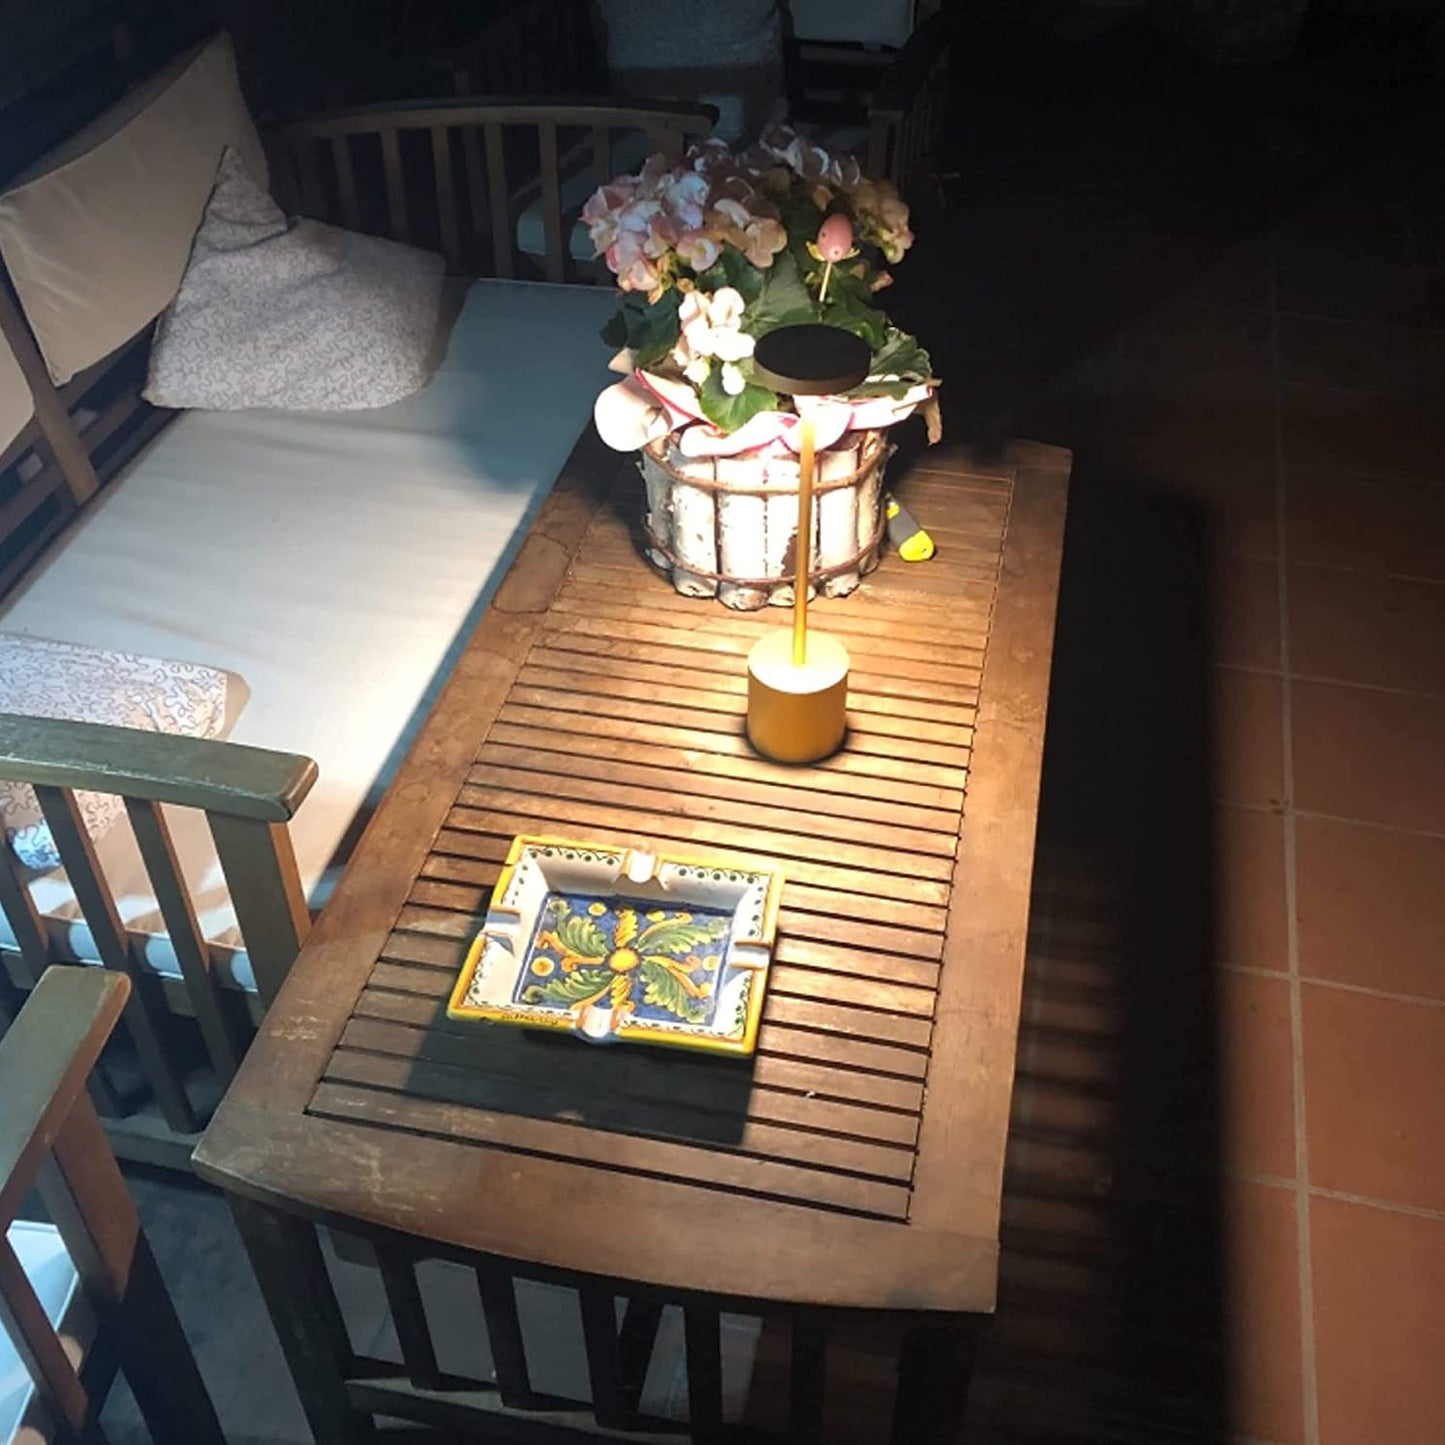 Modern LED Table & Dining Light